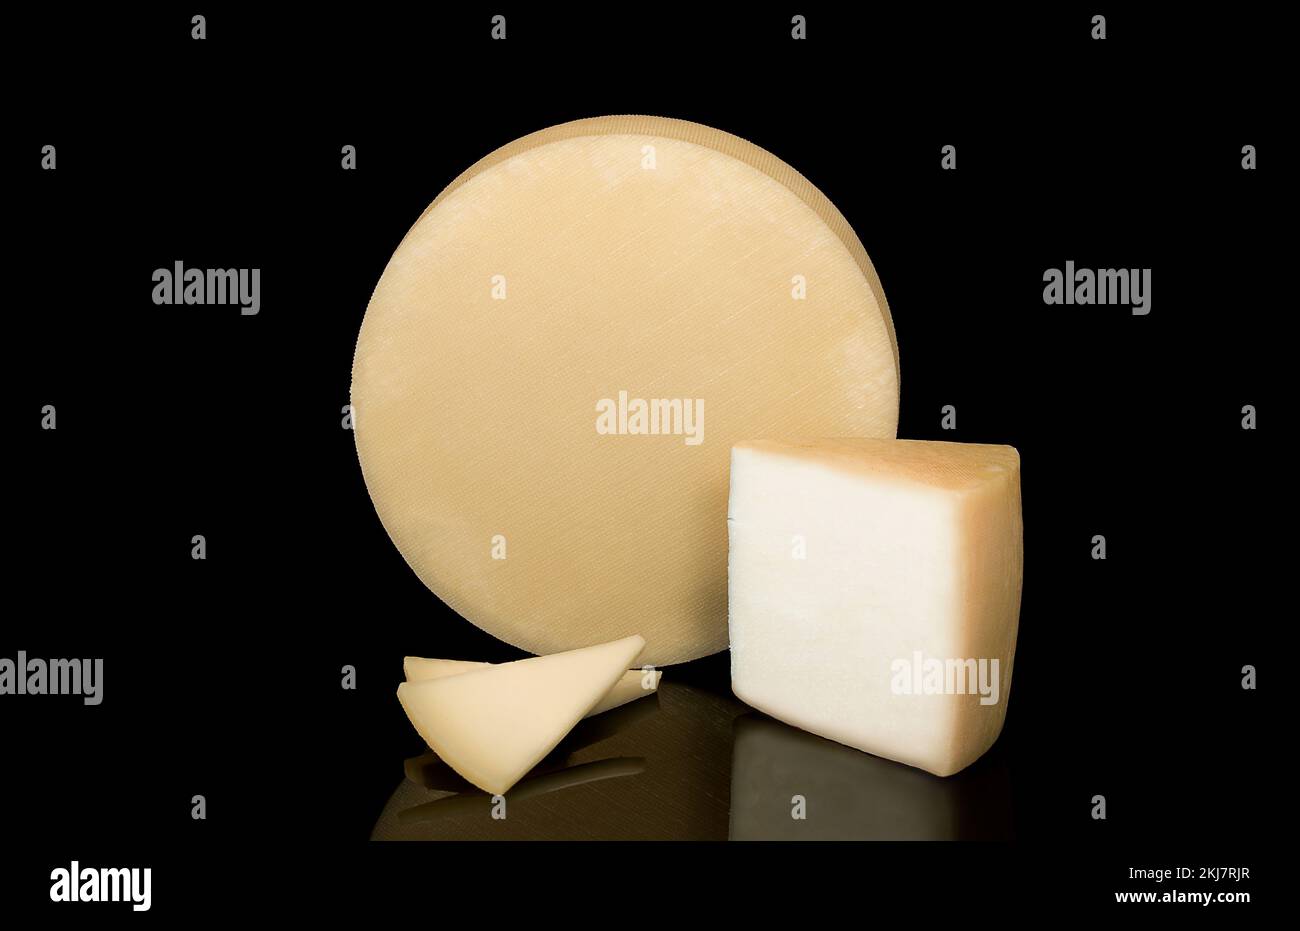 Un fromage avec une texture à son arrière isolé sur un fond noir à côté d'un coin et des tranches de fromage. Banque D'Images